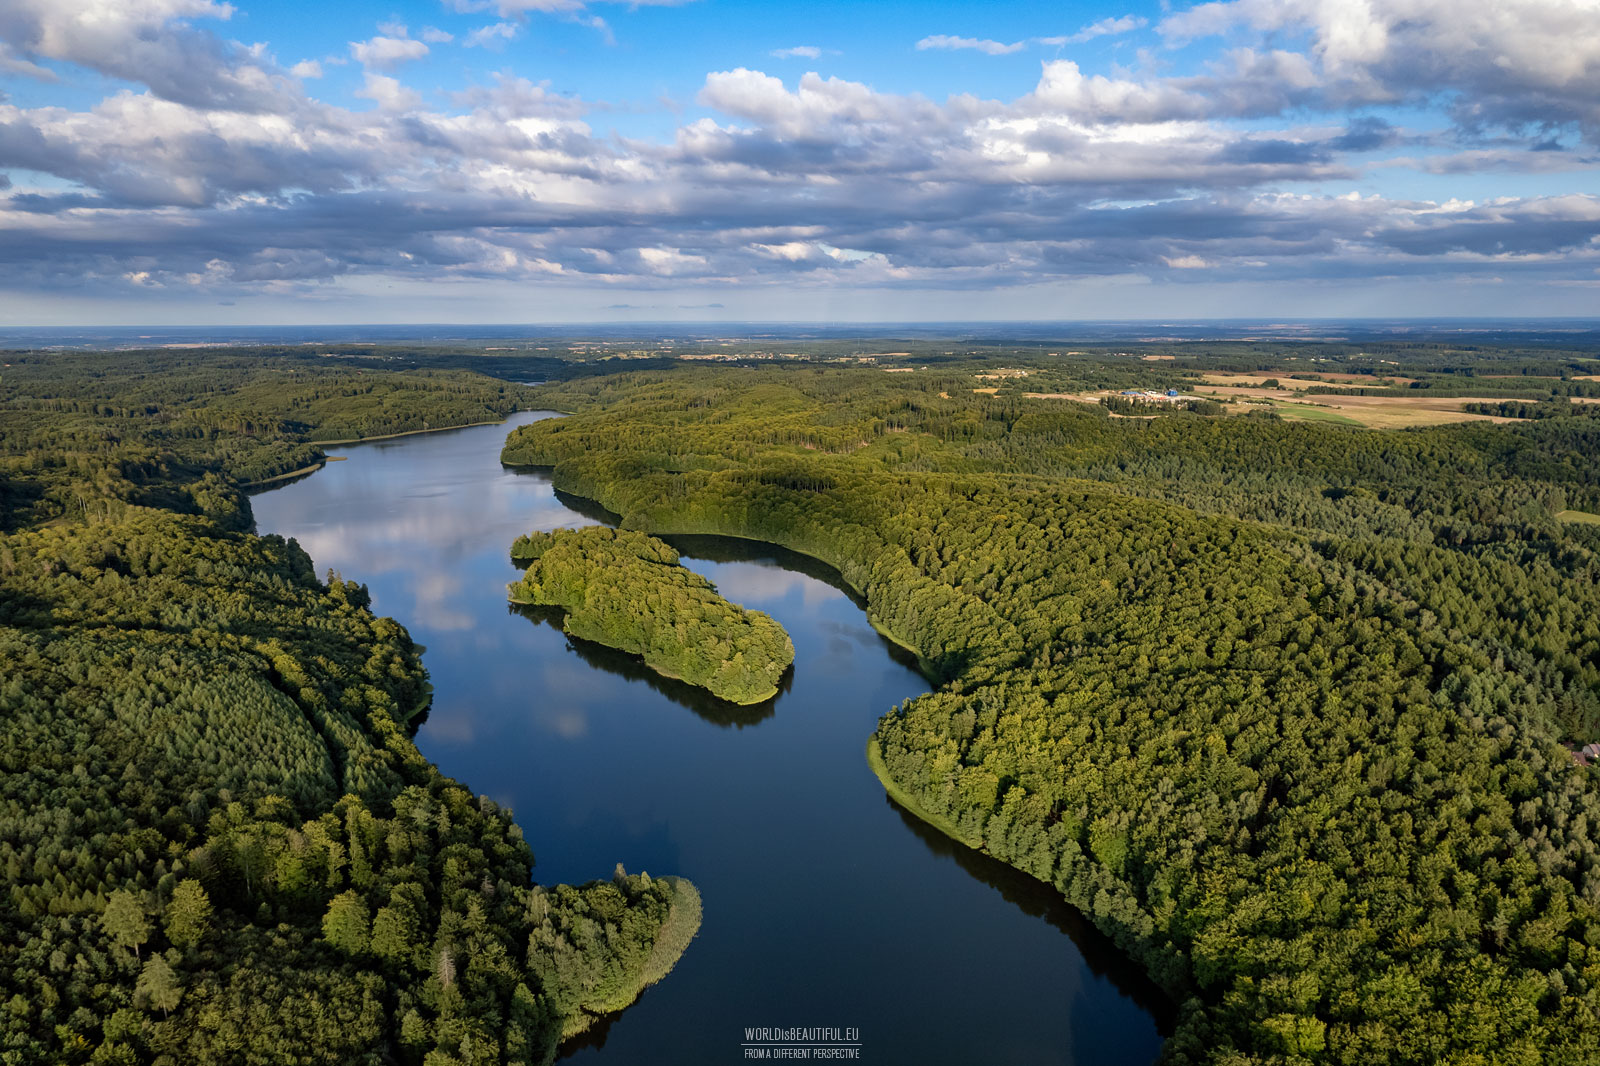 Przywidzkie Lake from the bird's eye view